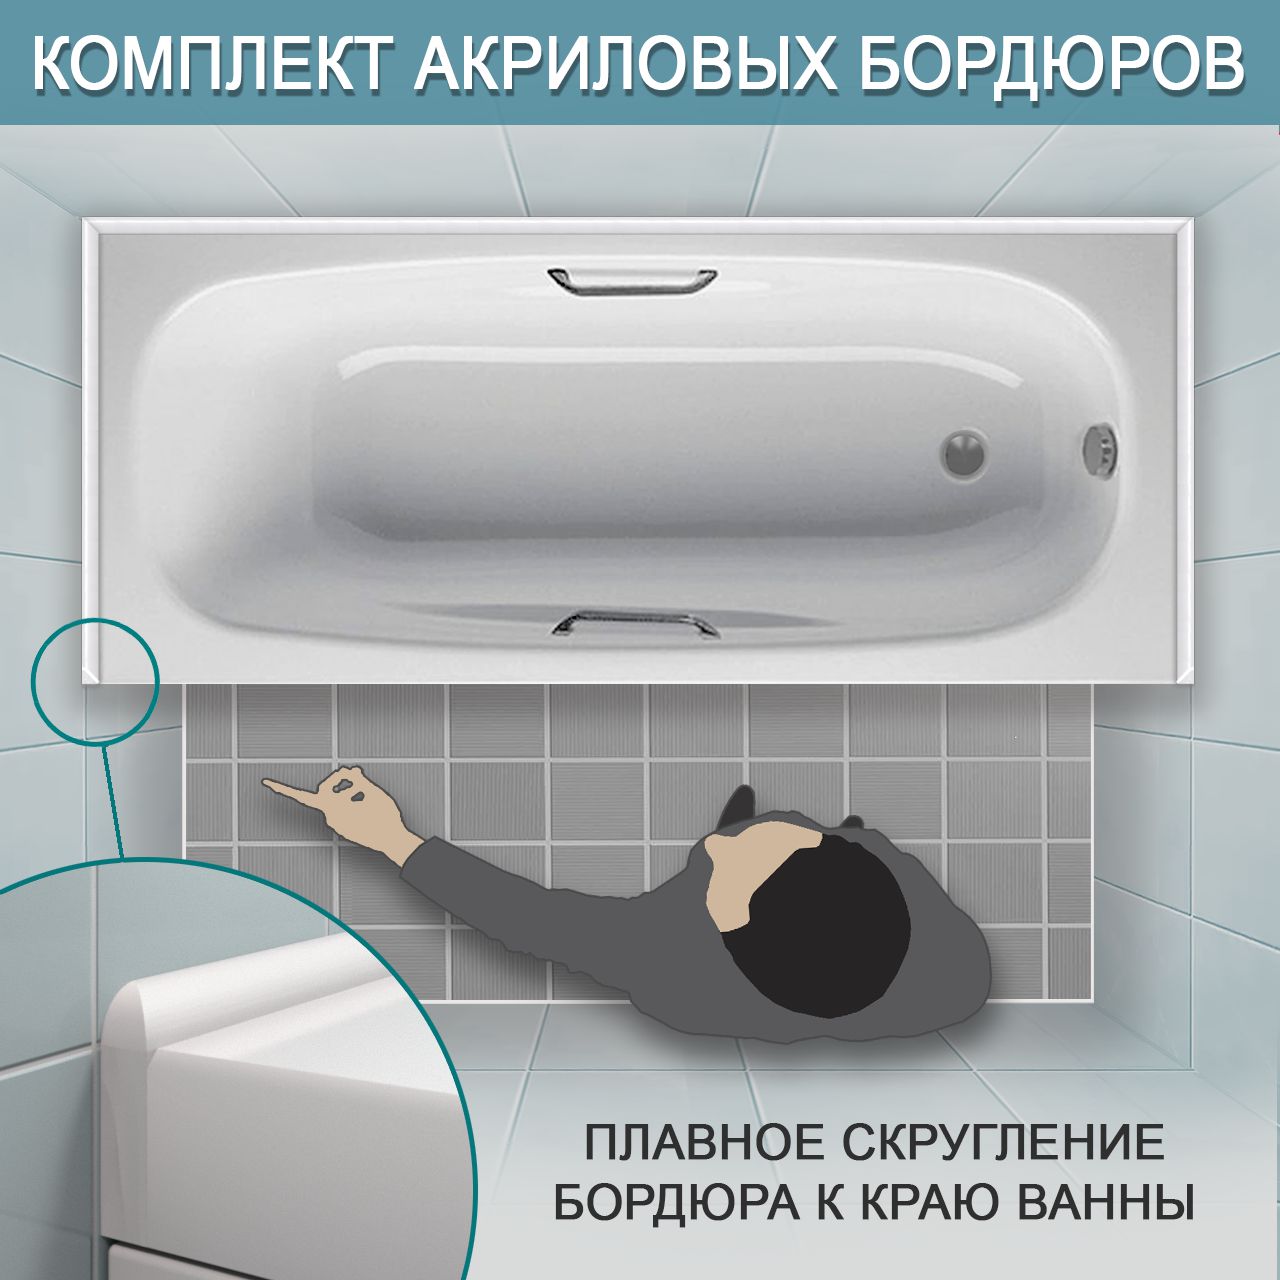 Комплект акриловых бордюров для ванной ПШ12 интернет-магазин BNV